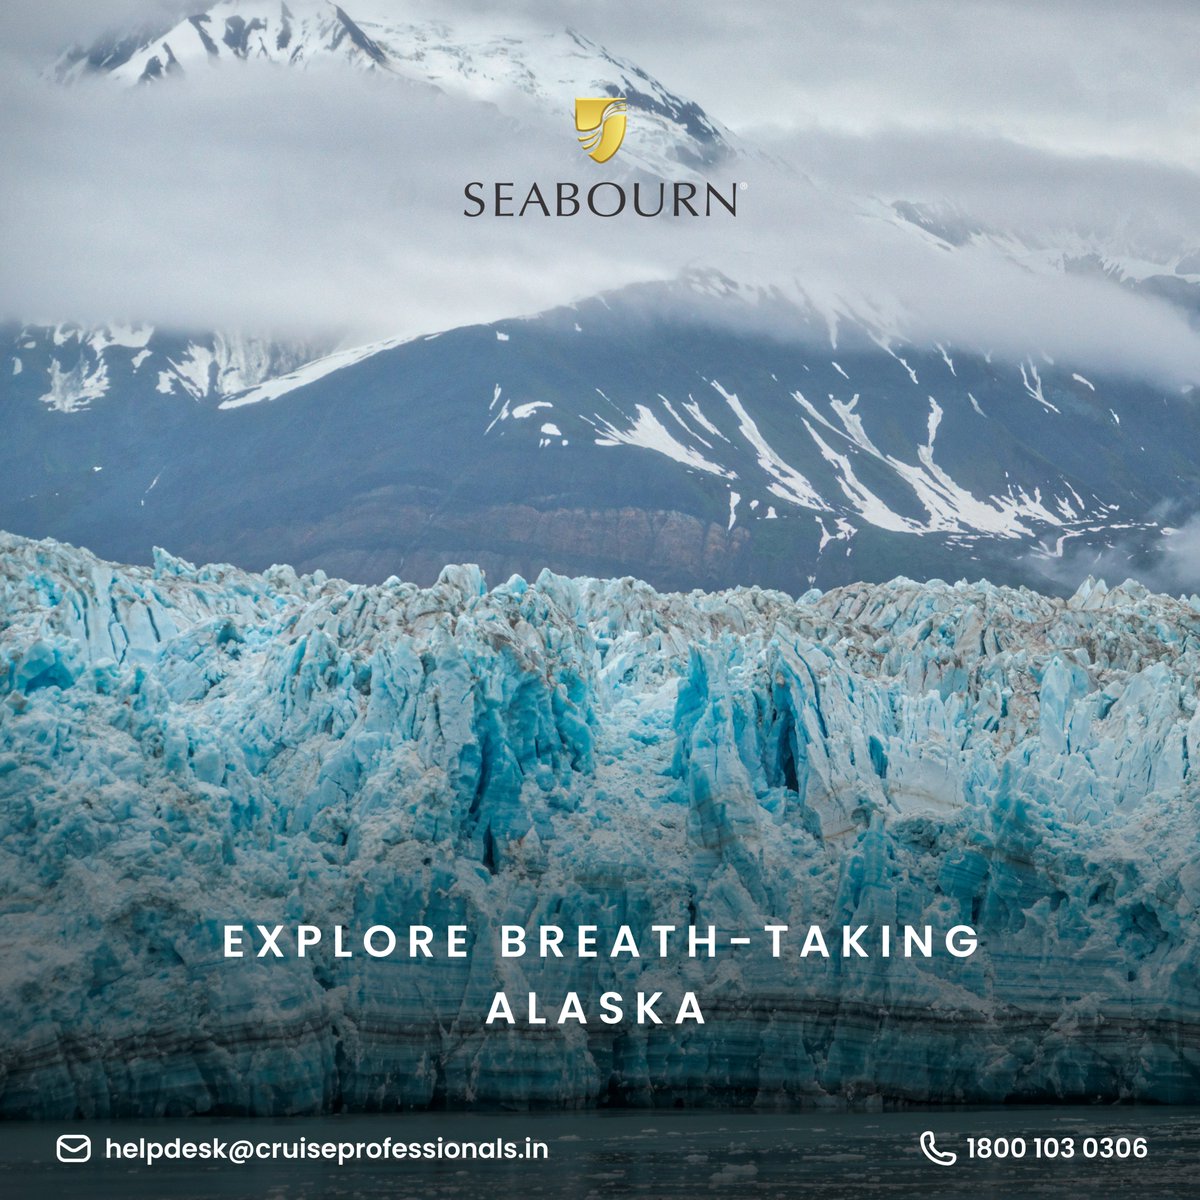 Explore breathtaking Alaska with Seabourn's ultra-luxury cruise ship.

#seabourn #cruiseprofessionals #luxurytravel #cruising #cruiselife #luxurycruise #luxurycruising #alaska #seabournmoments #seasthemoments